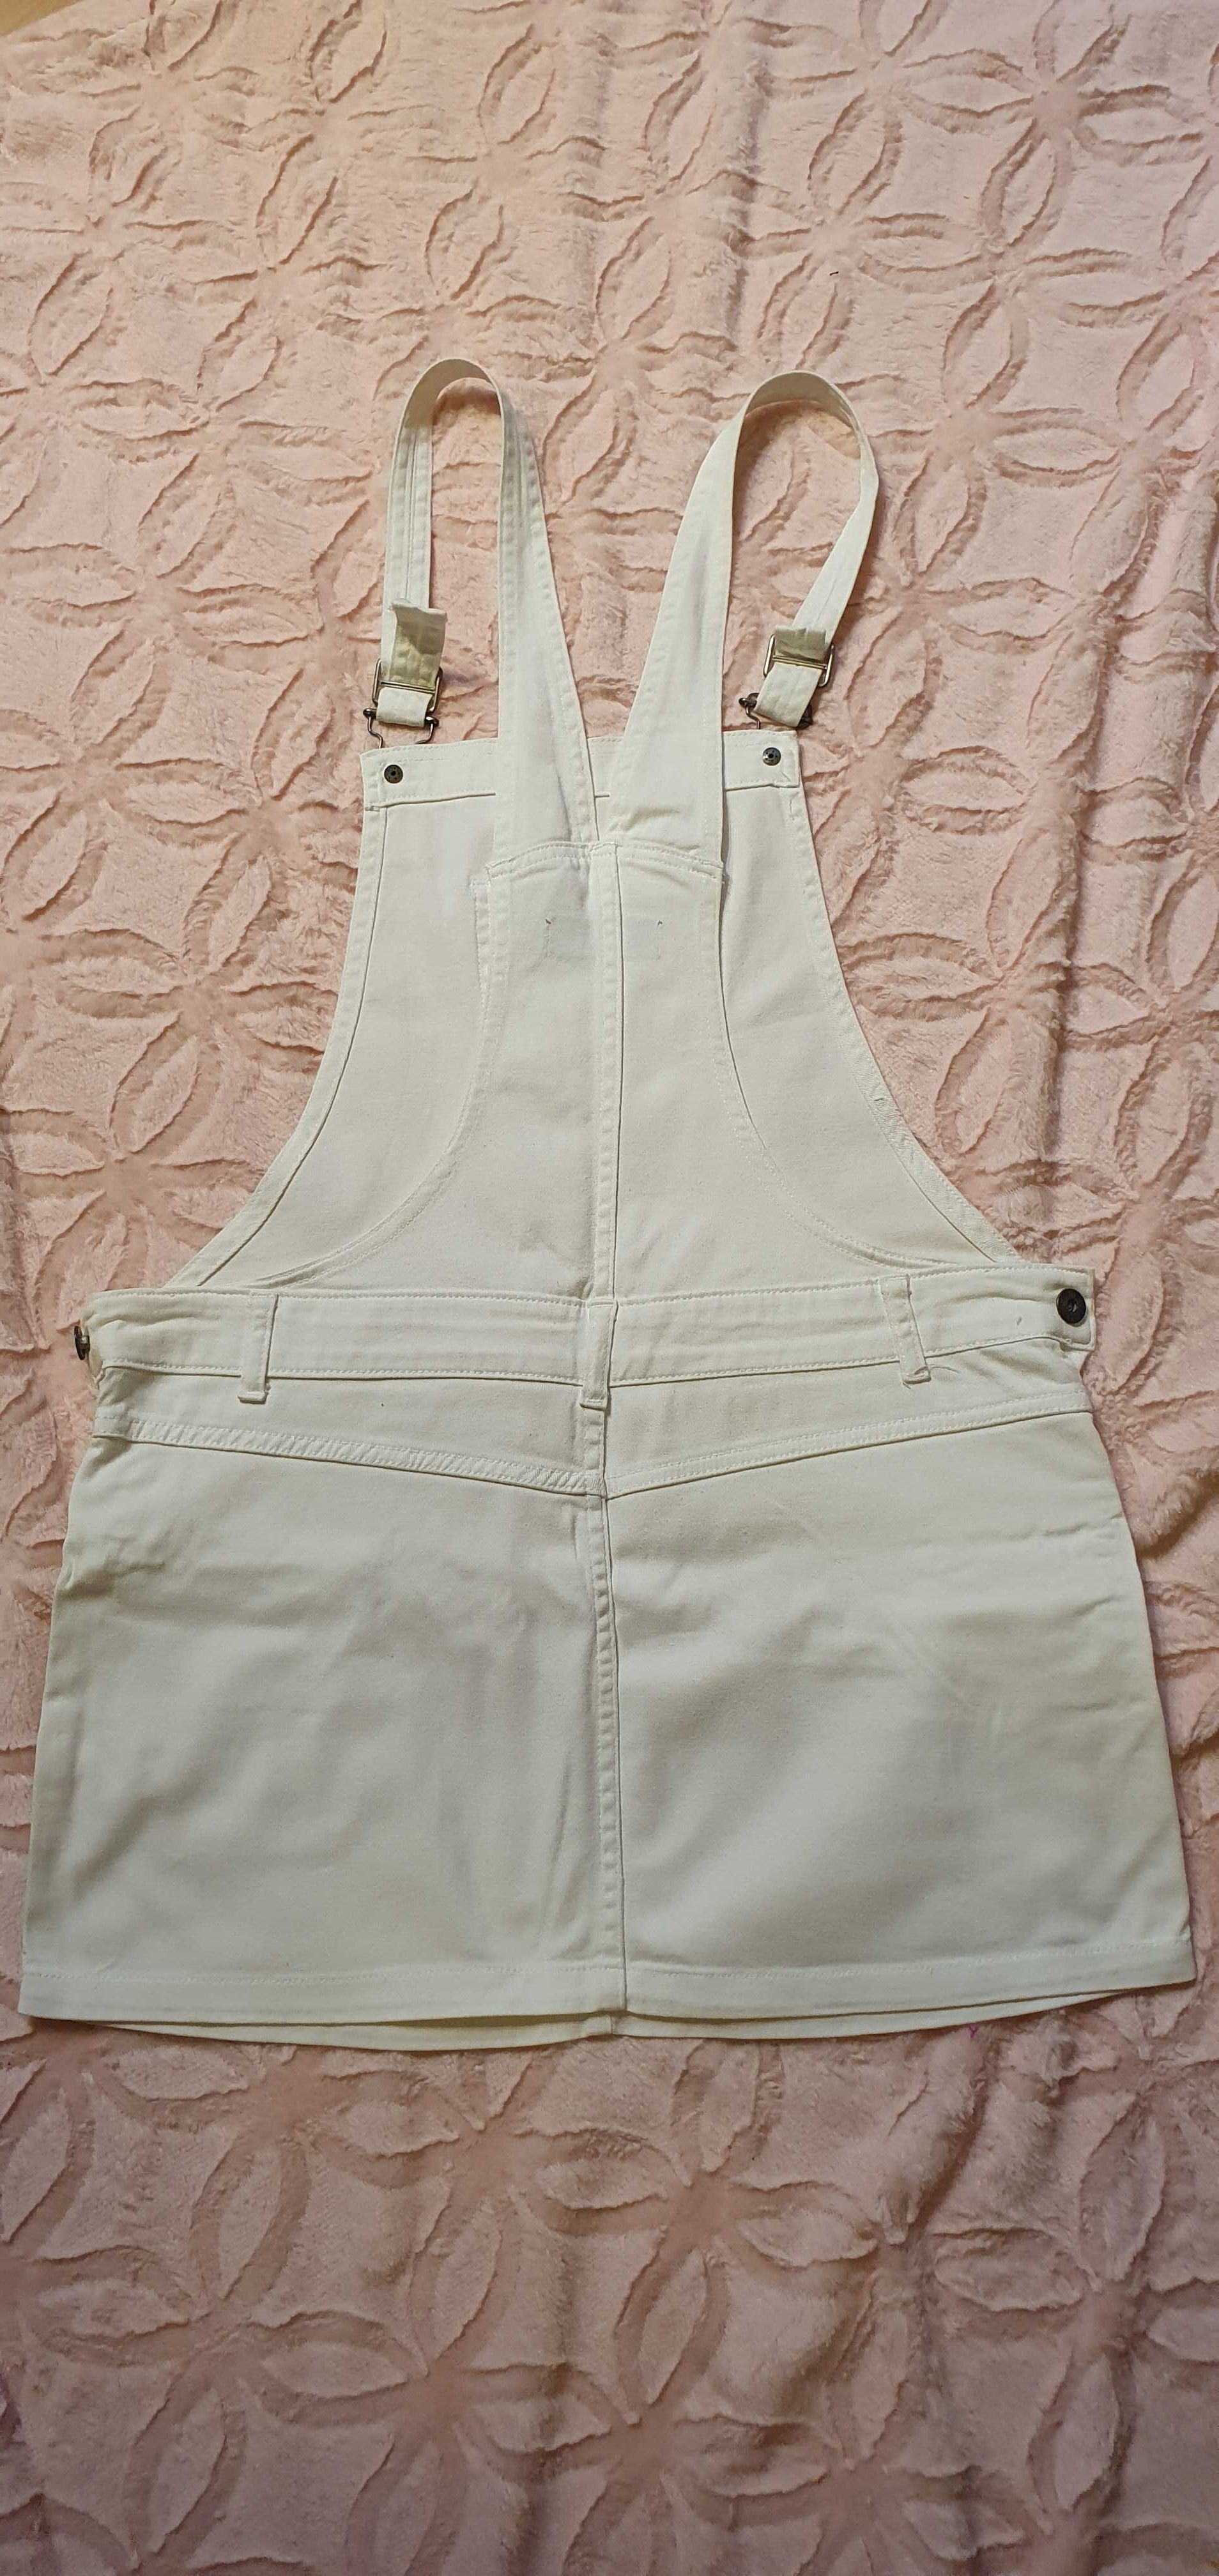 Biała jeansowa sukienka ogrodniczka firmy Sugarbebe rozmiar 12 - M/L